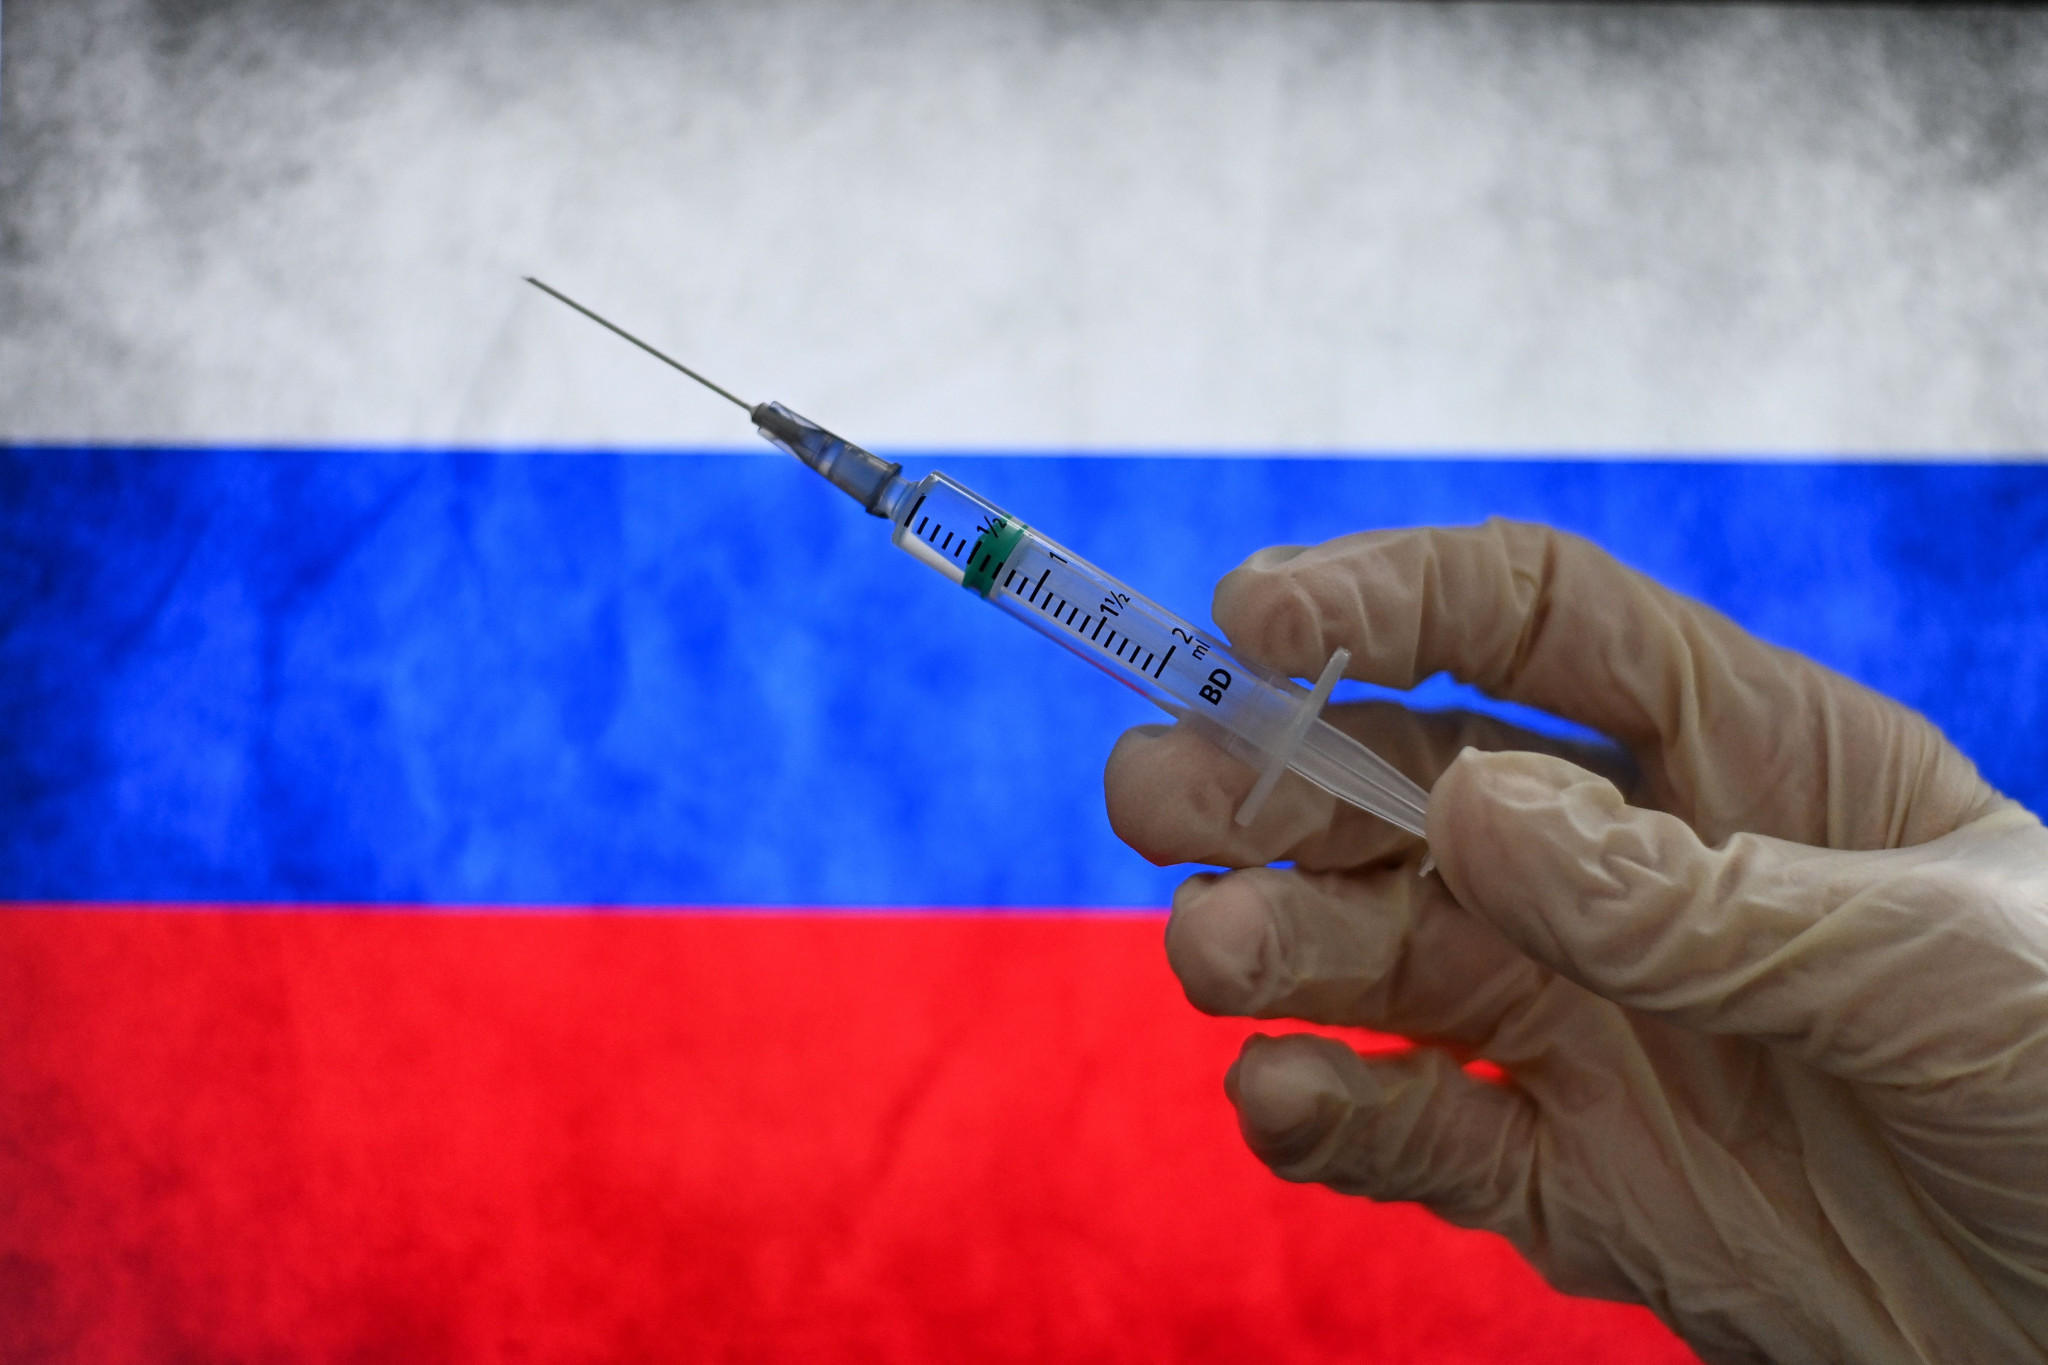 Le drapeau russe a été interdit du sport mondial en raison du passé de dopage du pays © Getty Images